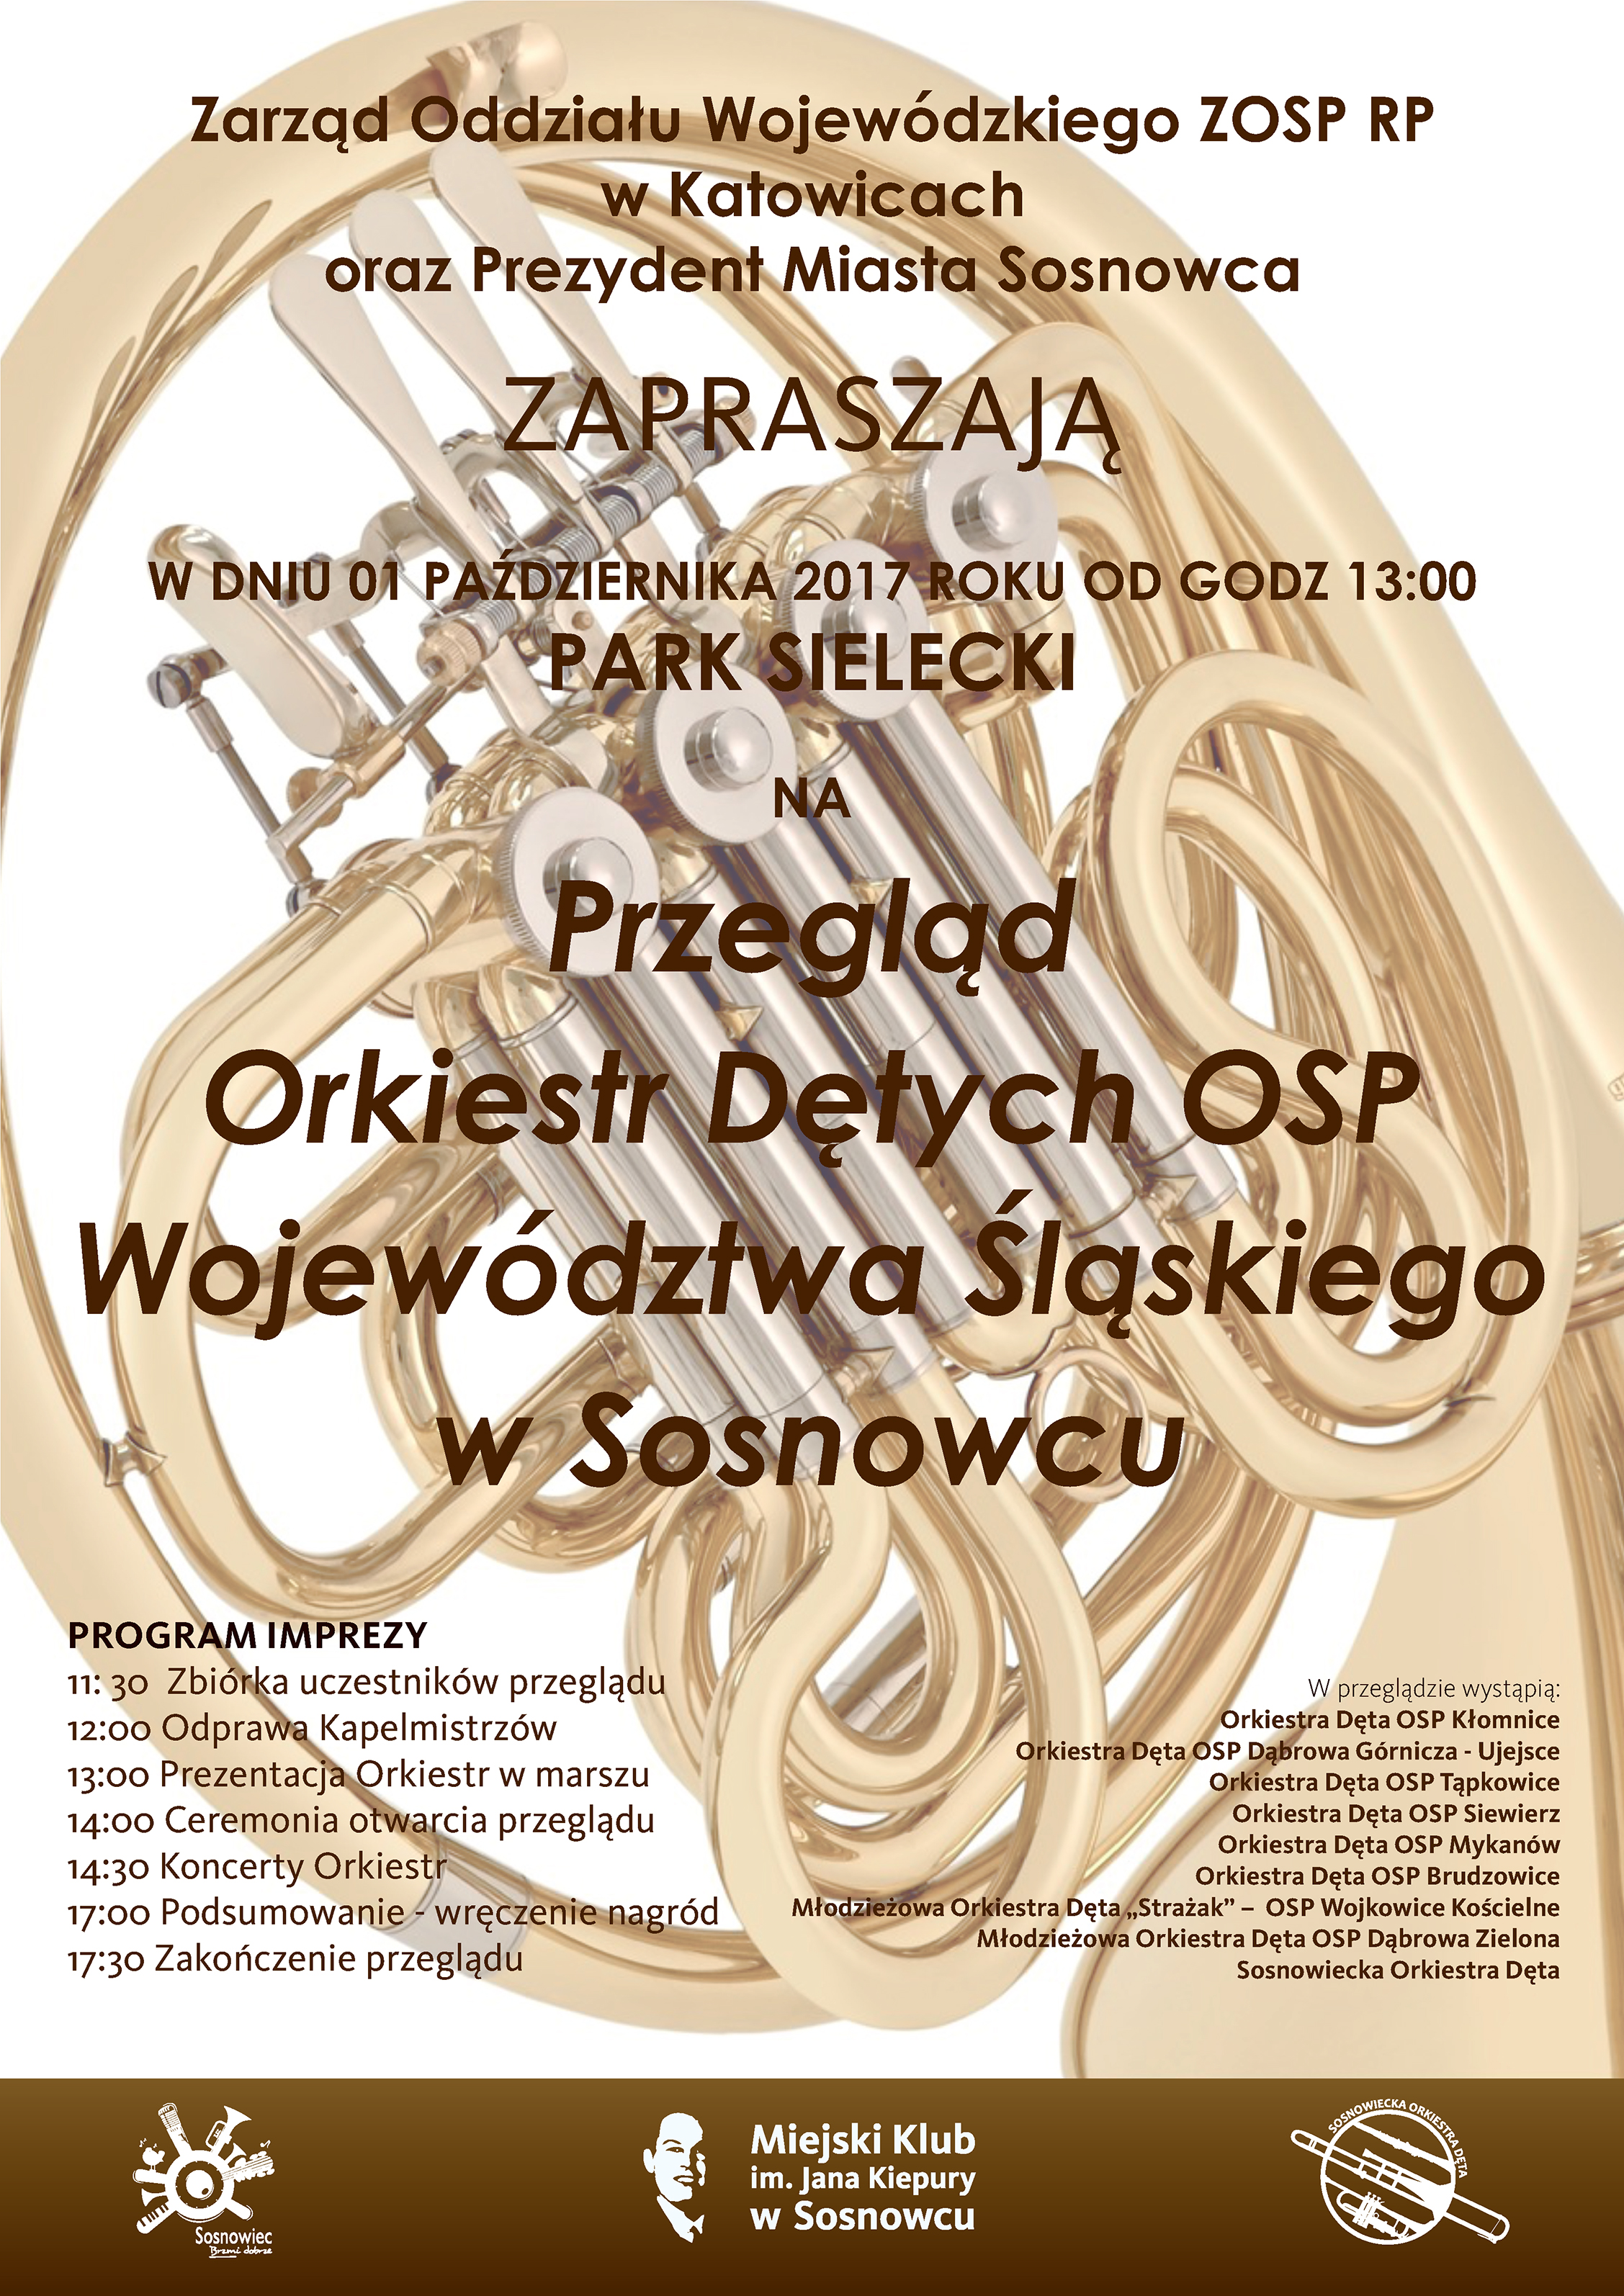 You are currently viewing PRZEGLĄD ORKIESTR DĘTYCH OSP WOJEWÓDZTWA ŚLĄSKIEGO